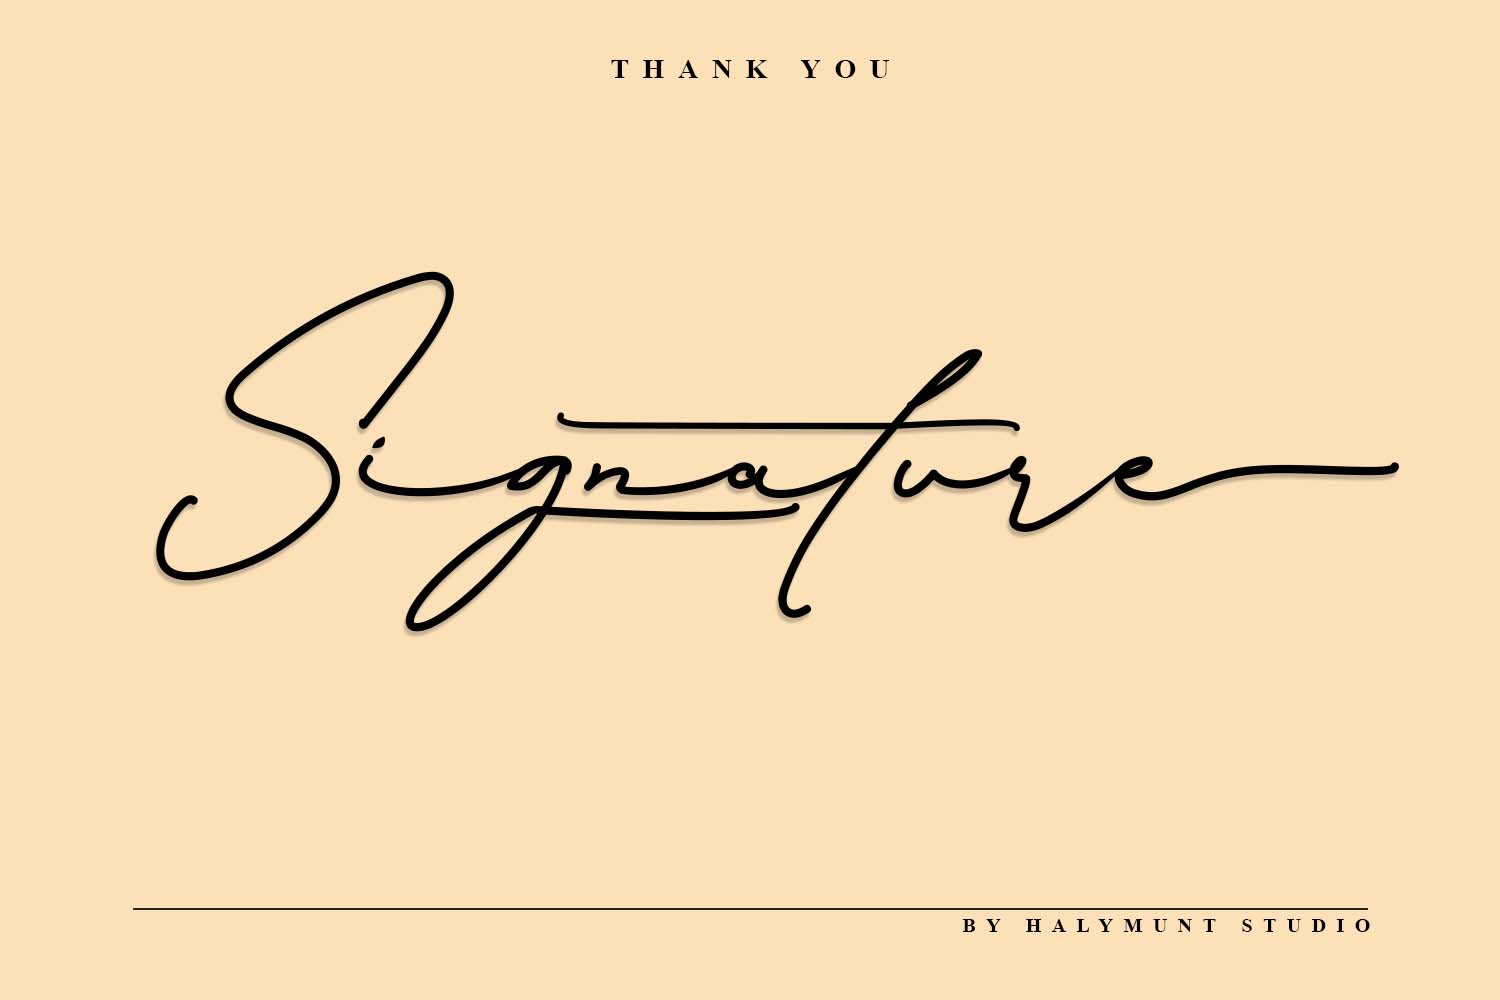 Signature Collection – Halymunt Studio